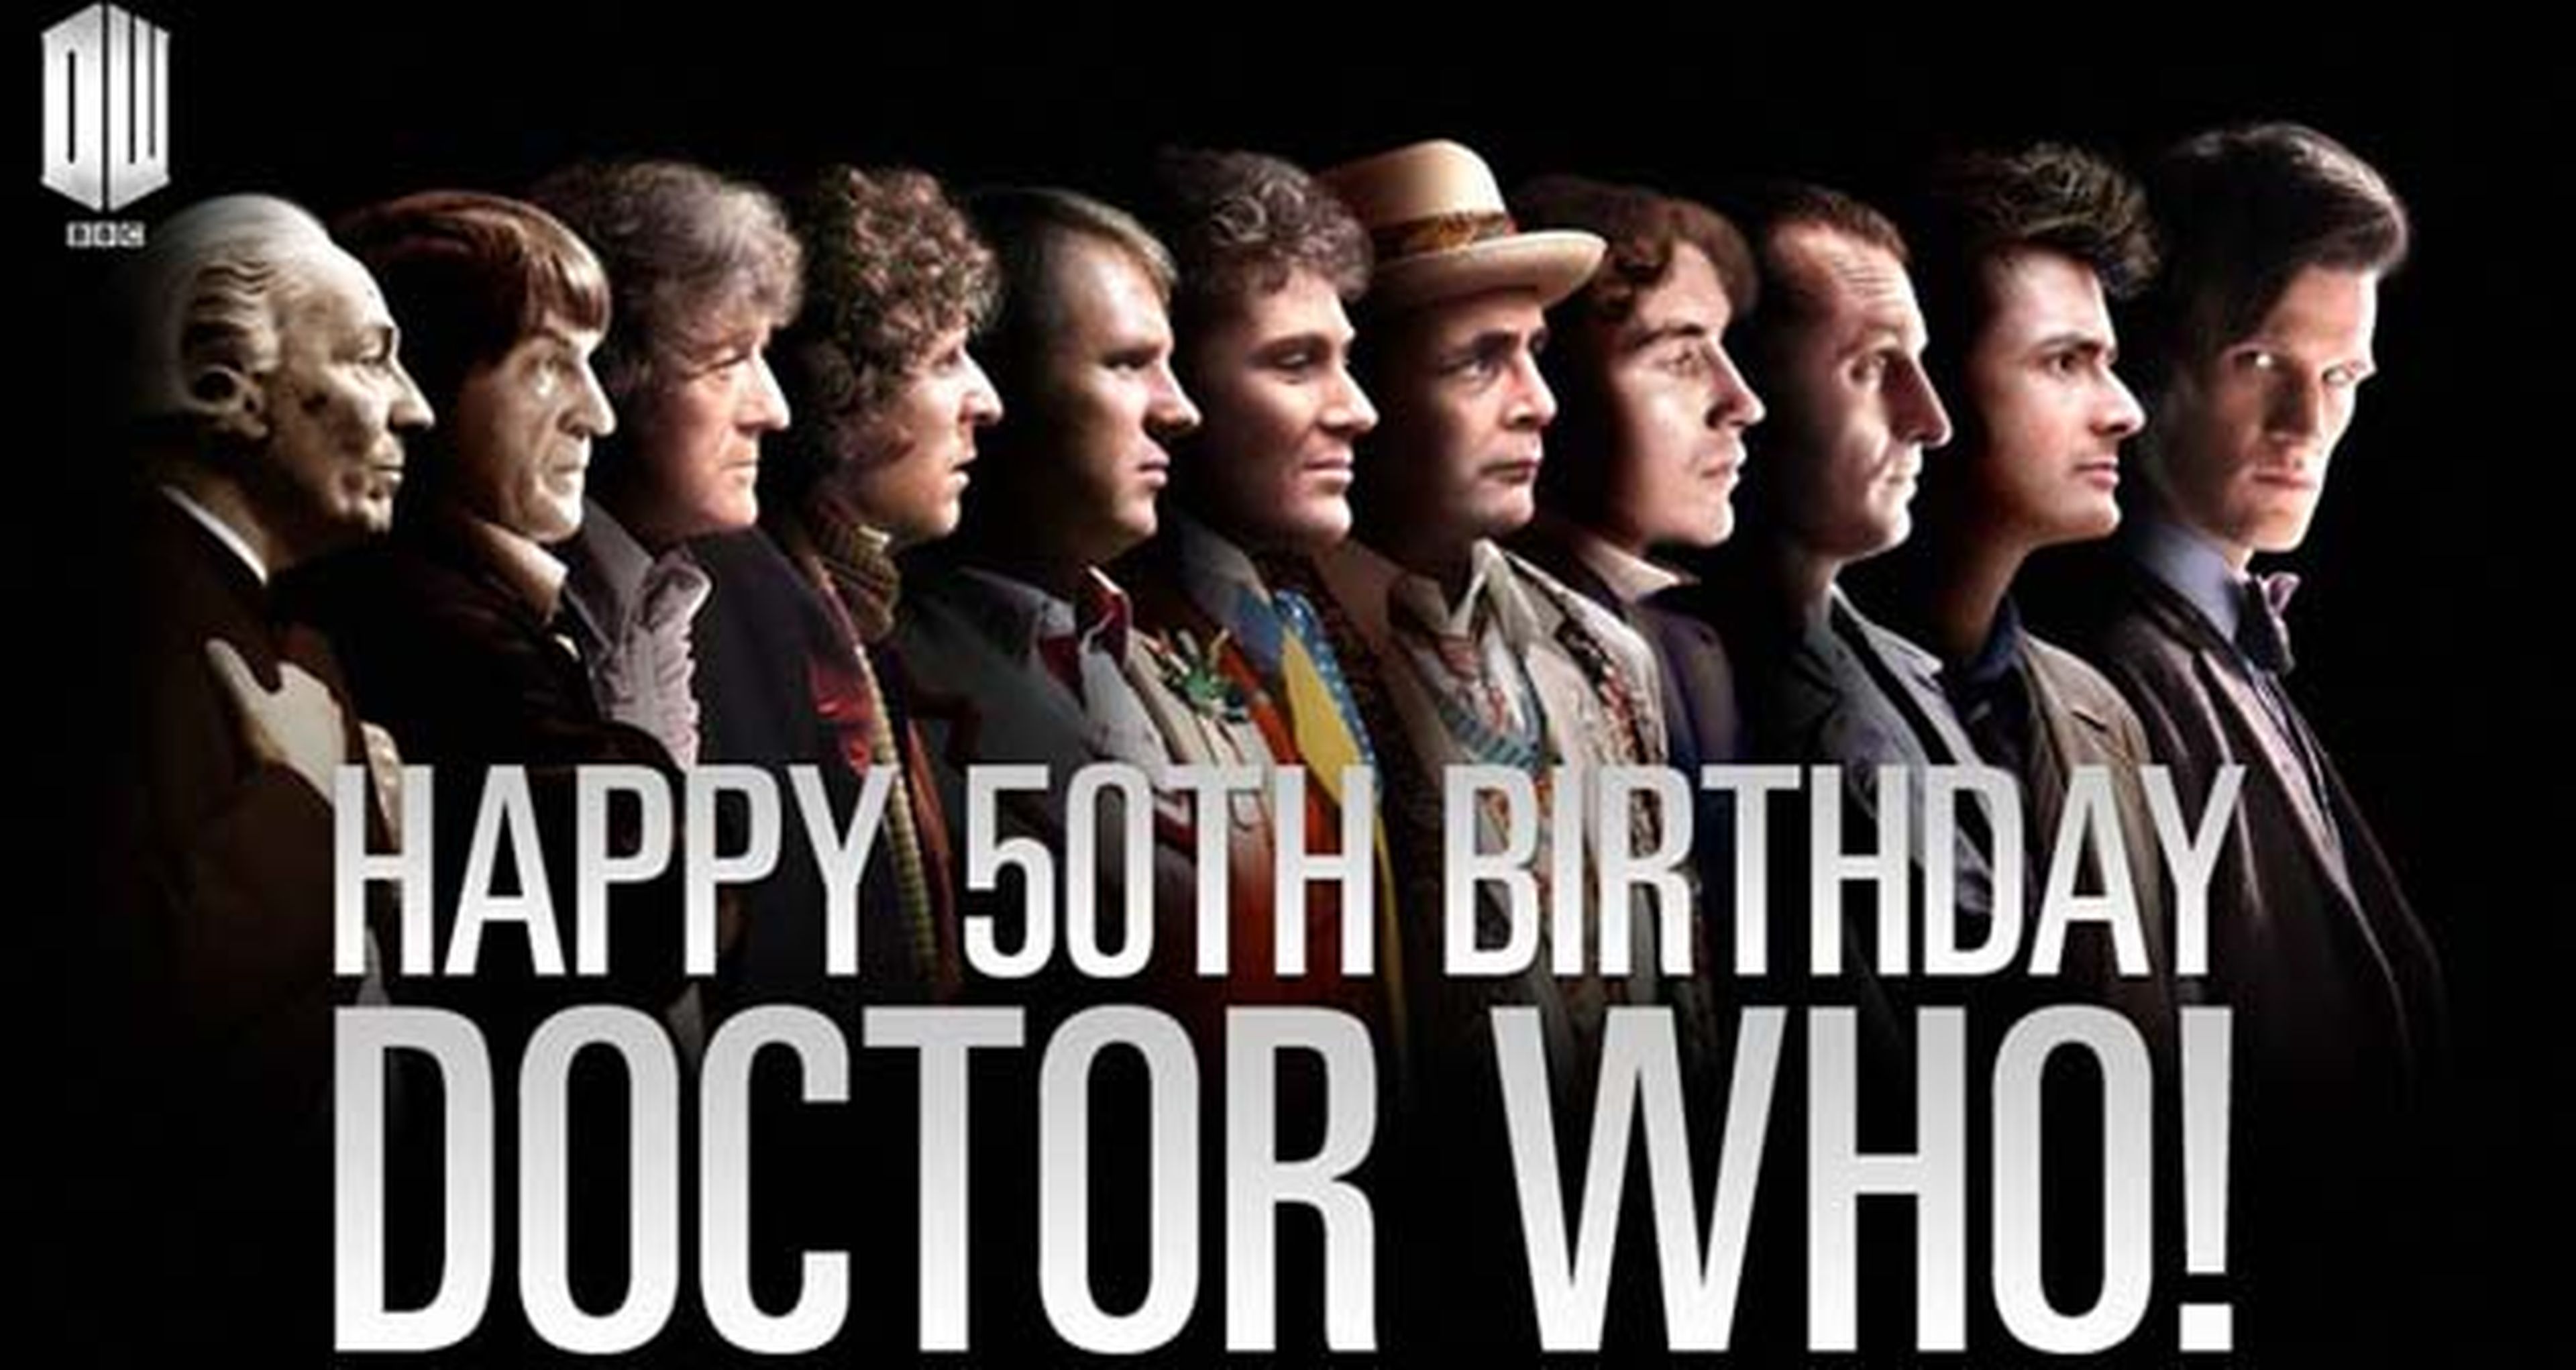 Hoy es el 50 Aniversario de Doctor Who